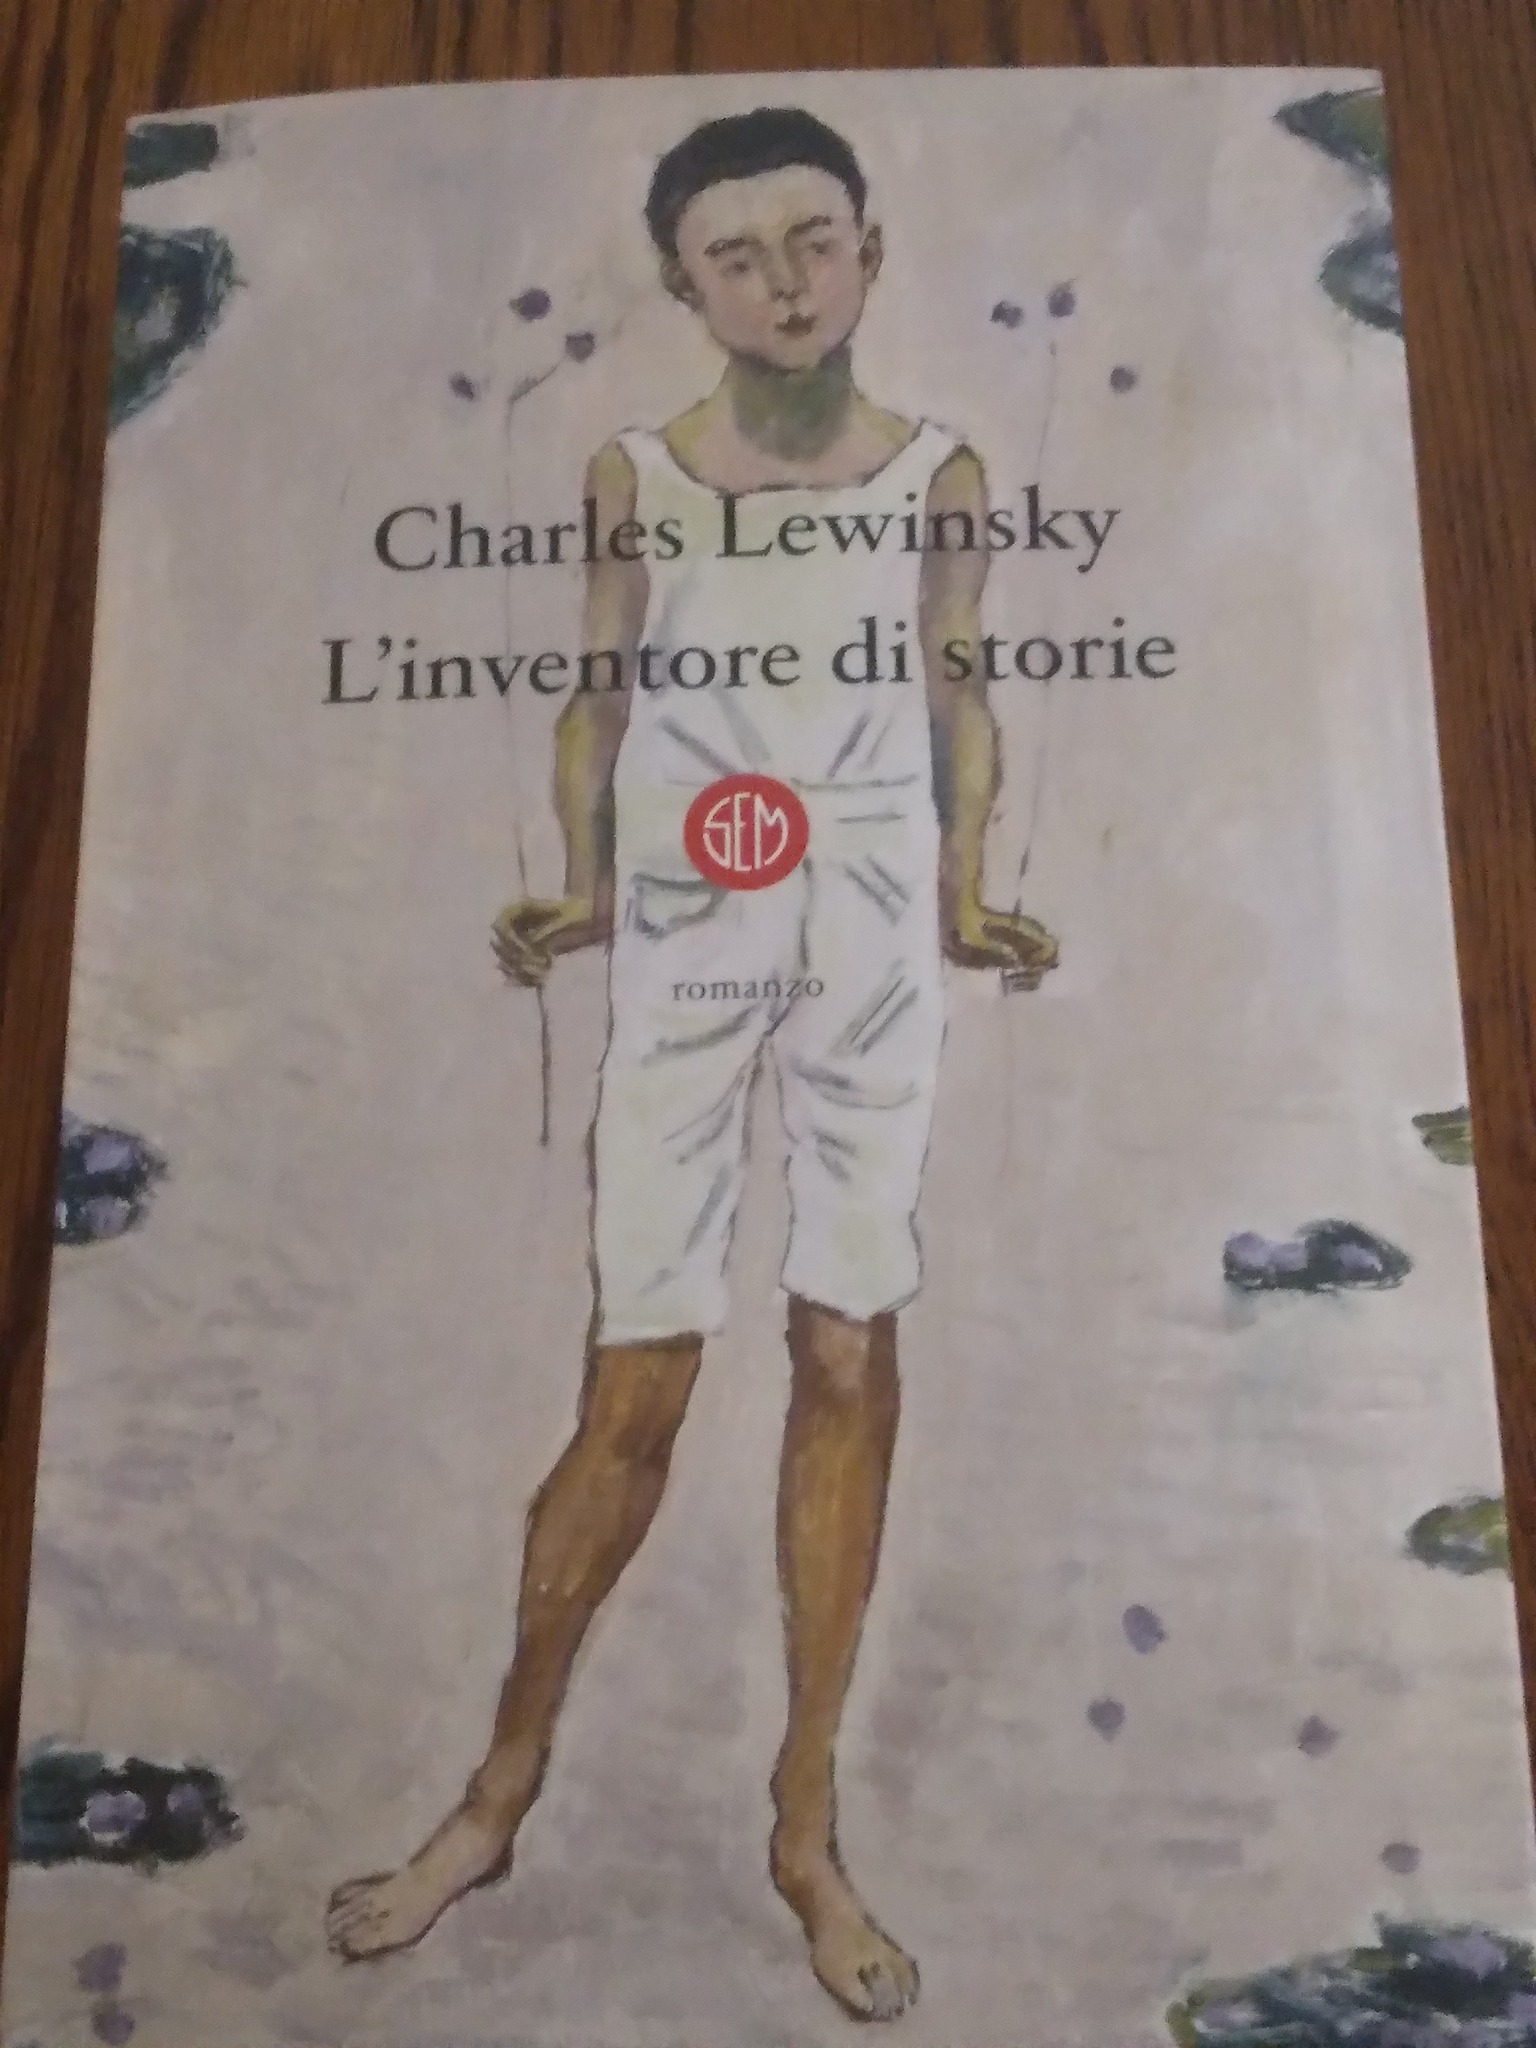 “L’ inventore di storie” – Charles Lewinsky